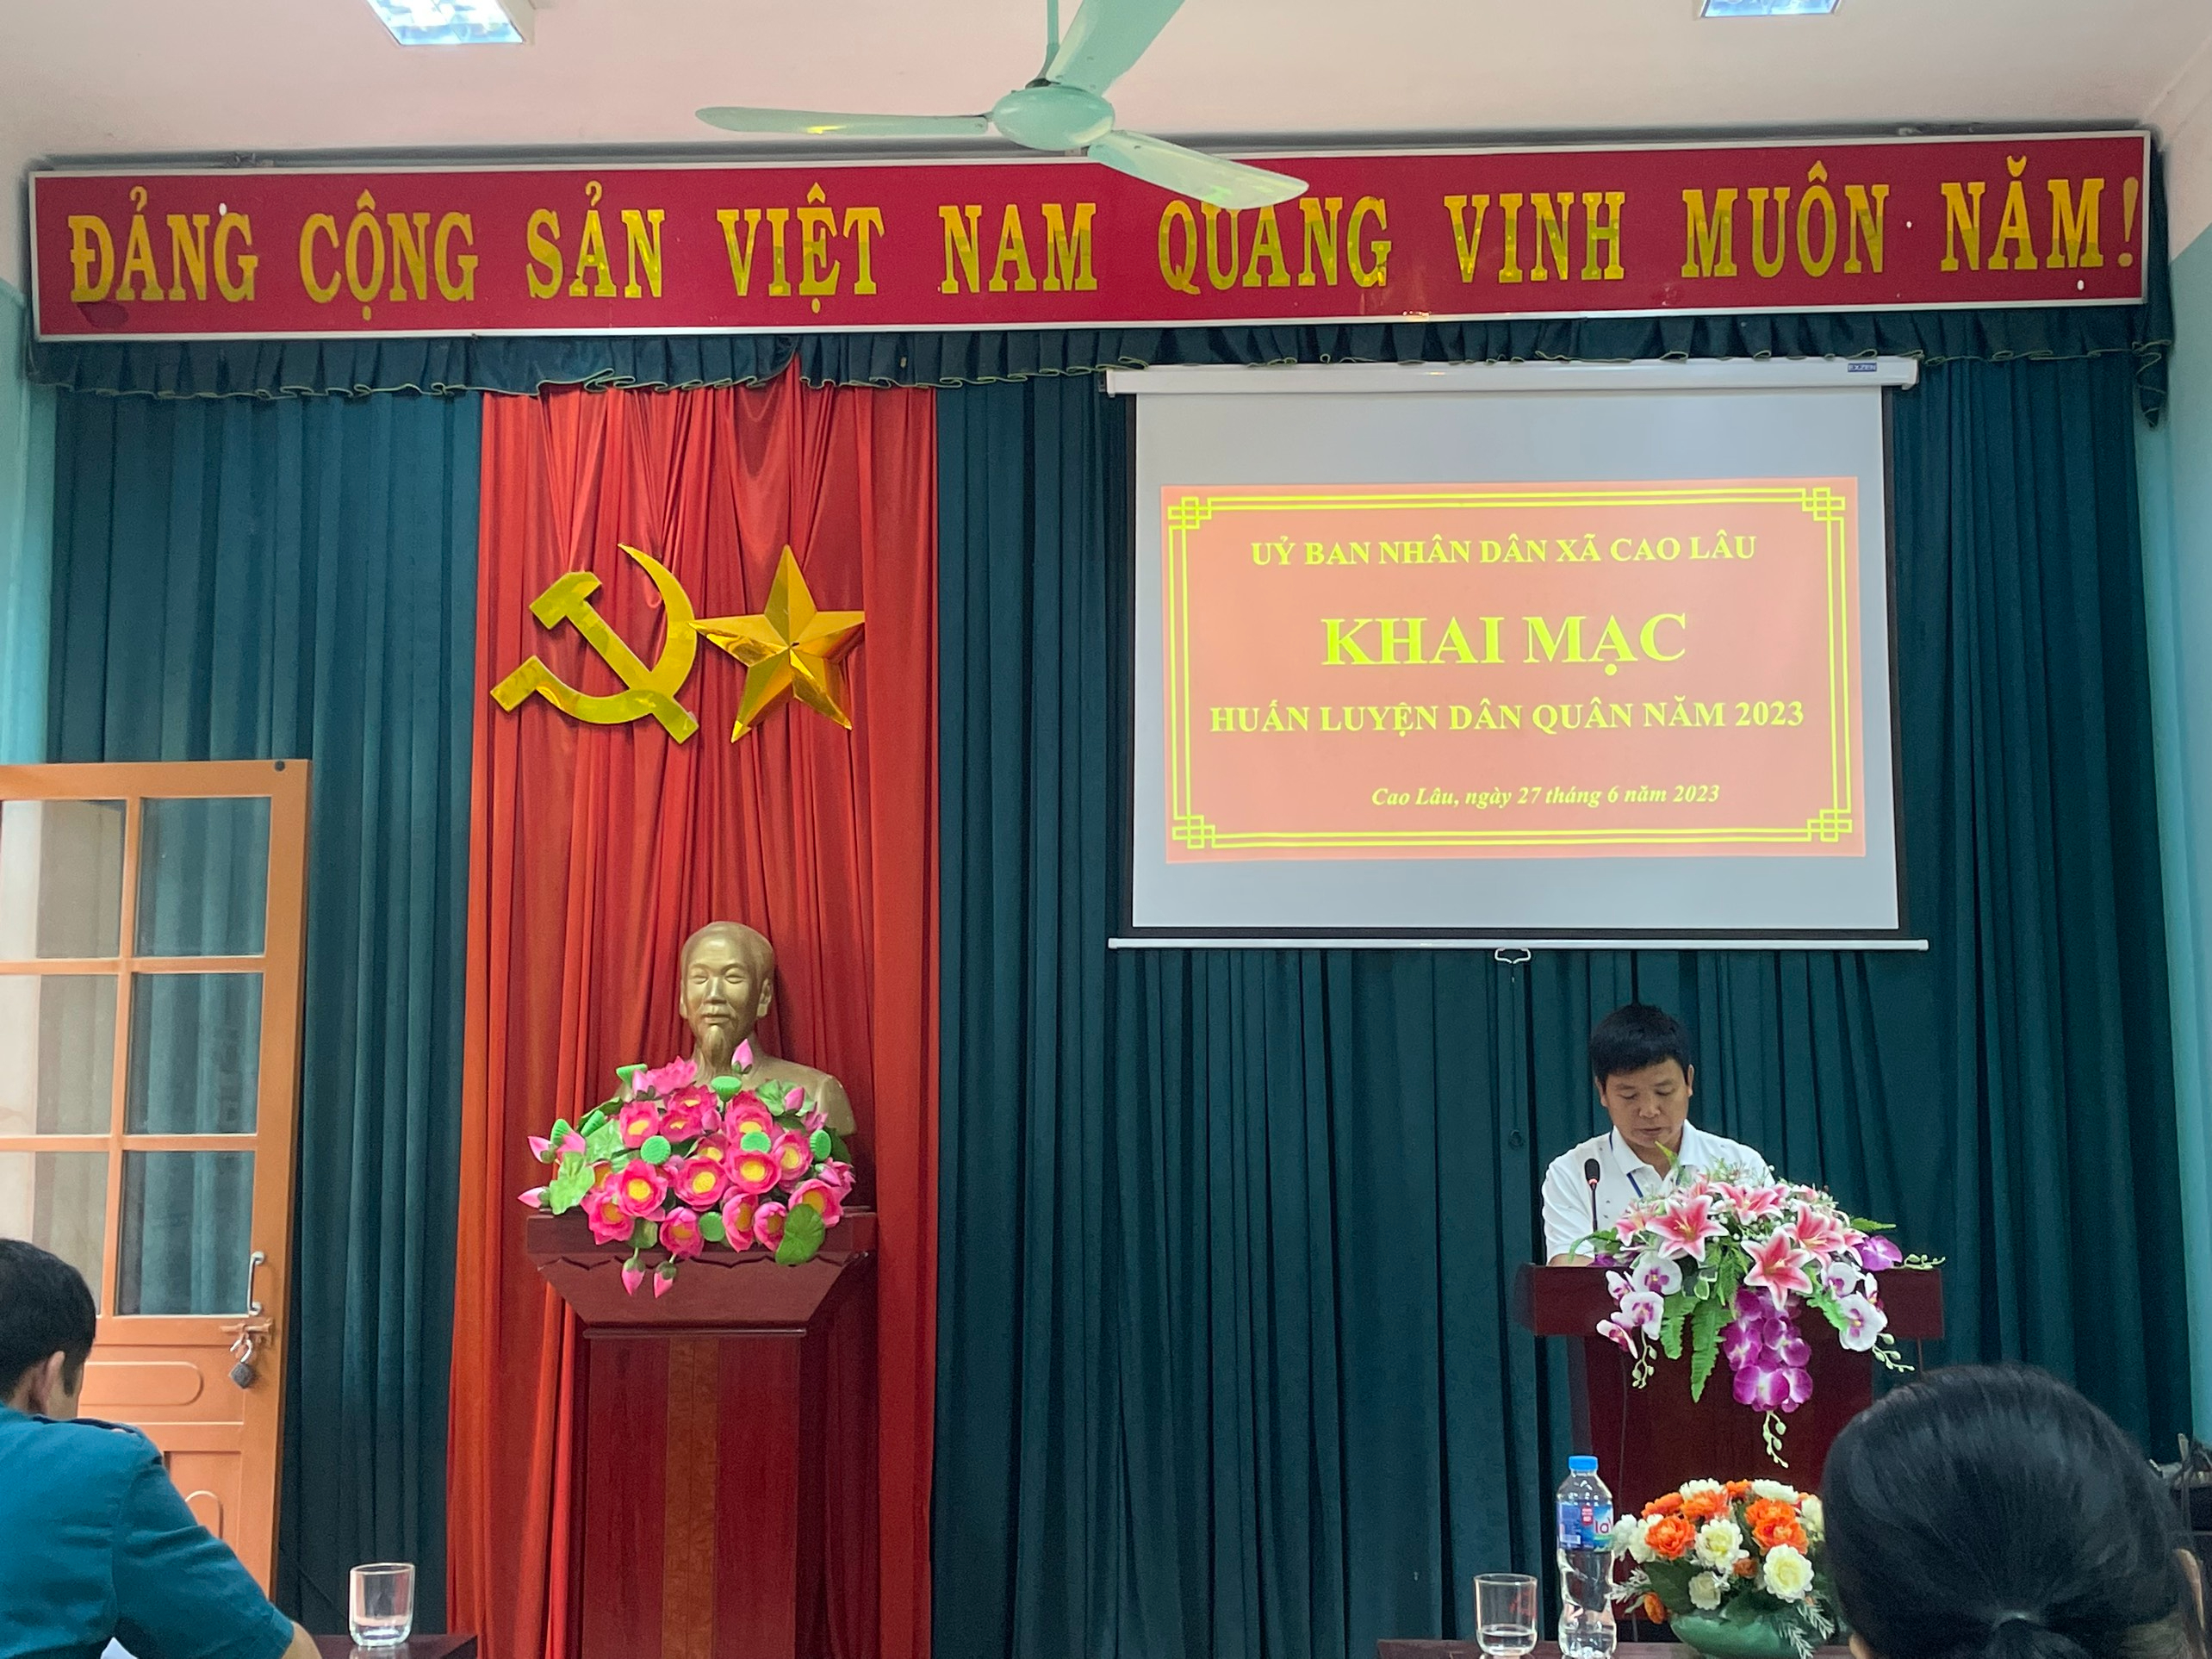 Đồng chí Hoàng Văn Điều – Bí thư Đảng uỷ, Chủ tịch UBND xã phát biểu tại buổi khai mạc huấn luyện dân quân tự vệ năm 2023.